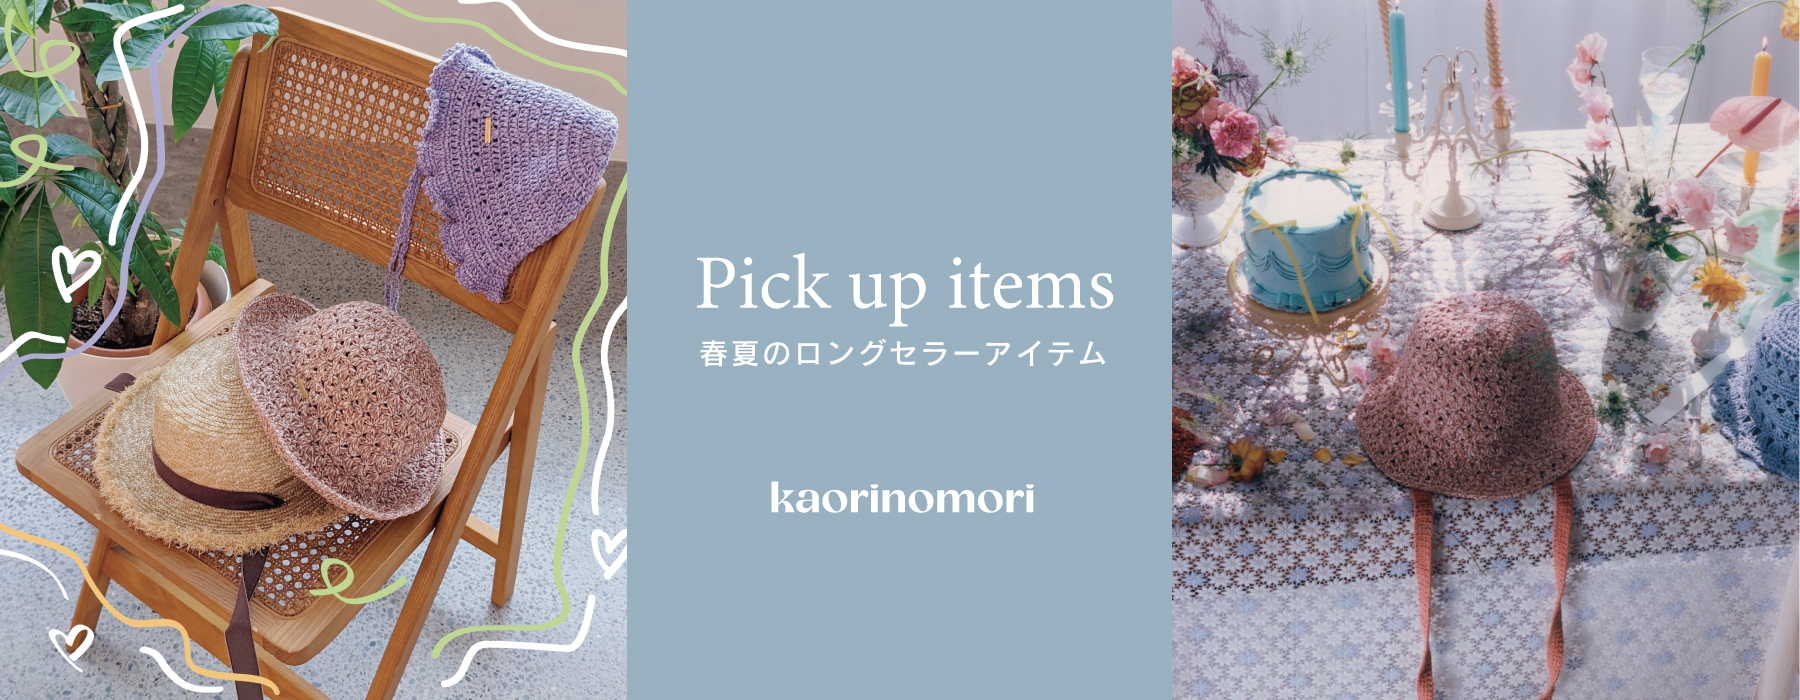 kaorinomori / Pick up Items - 春夏のロングセラーアイテム-